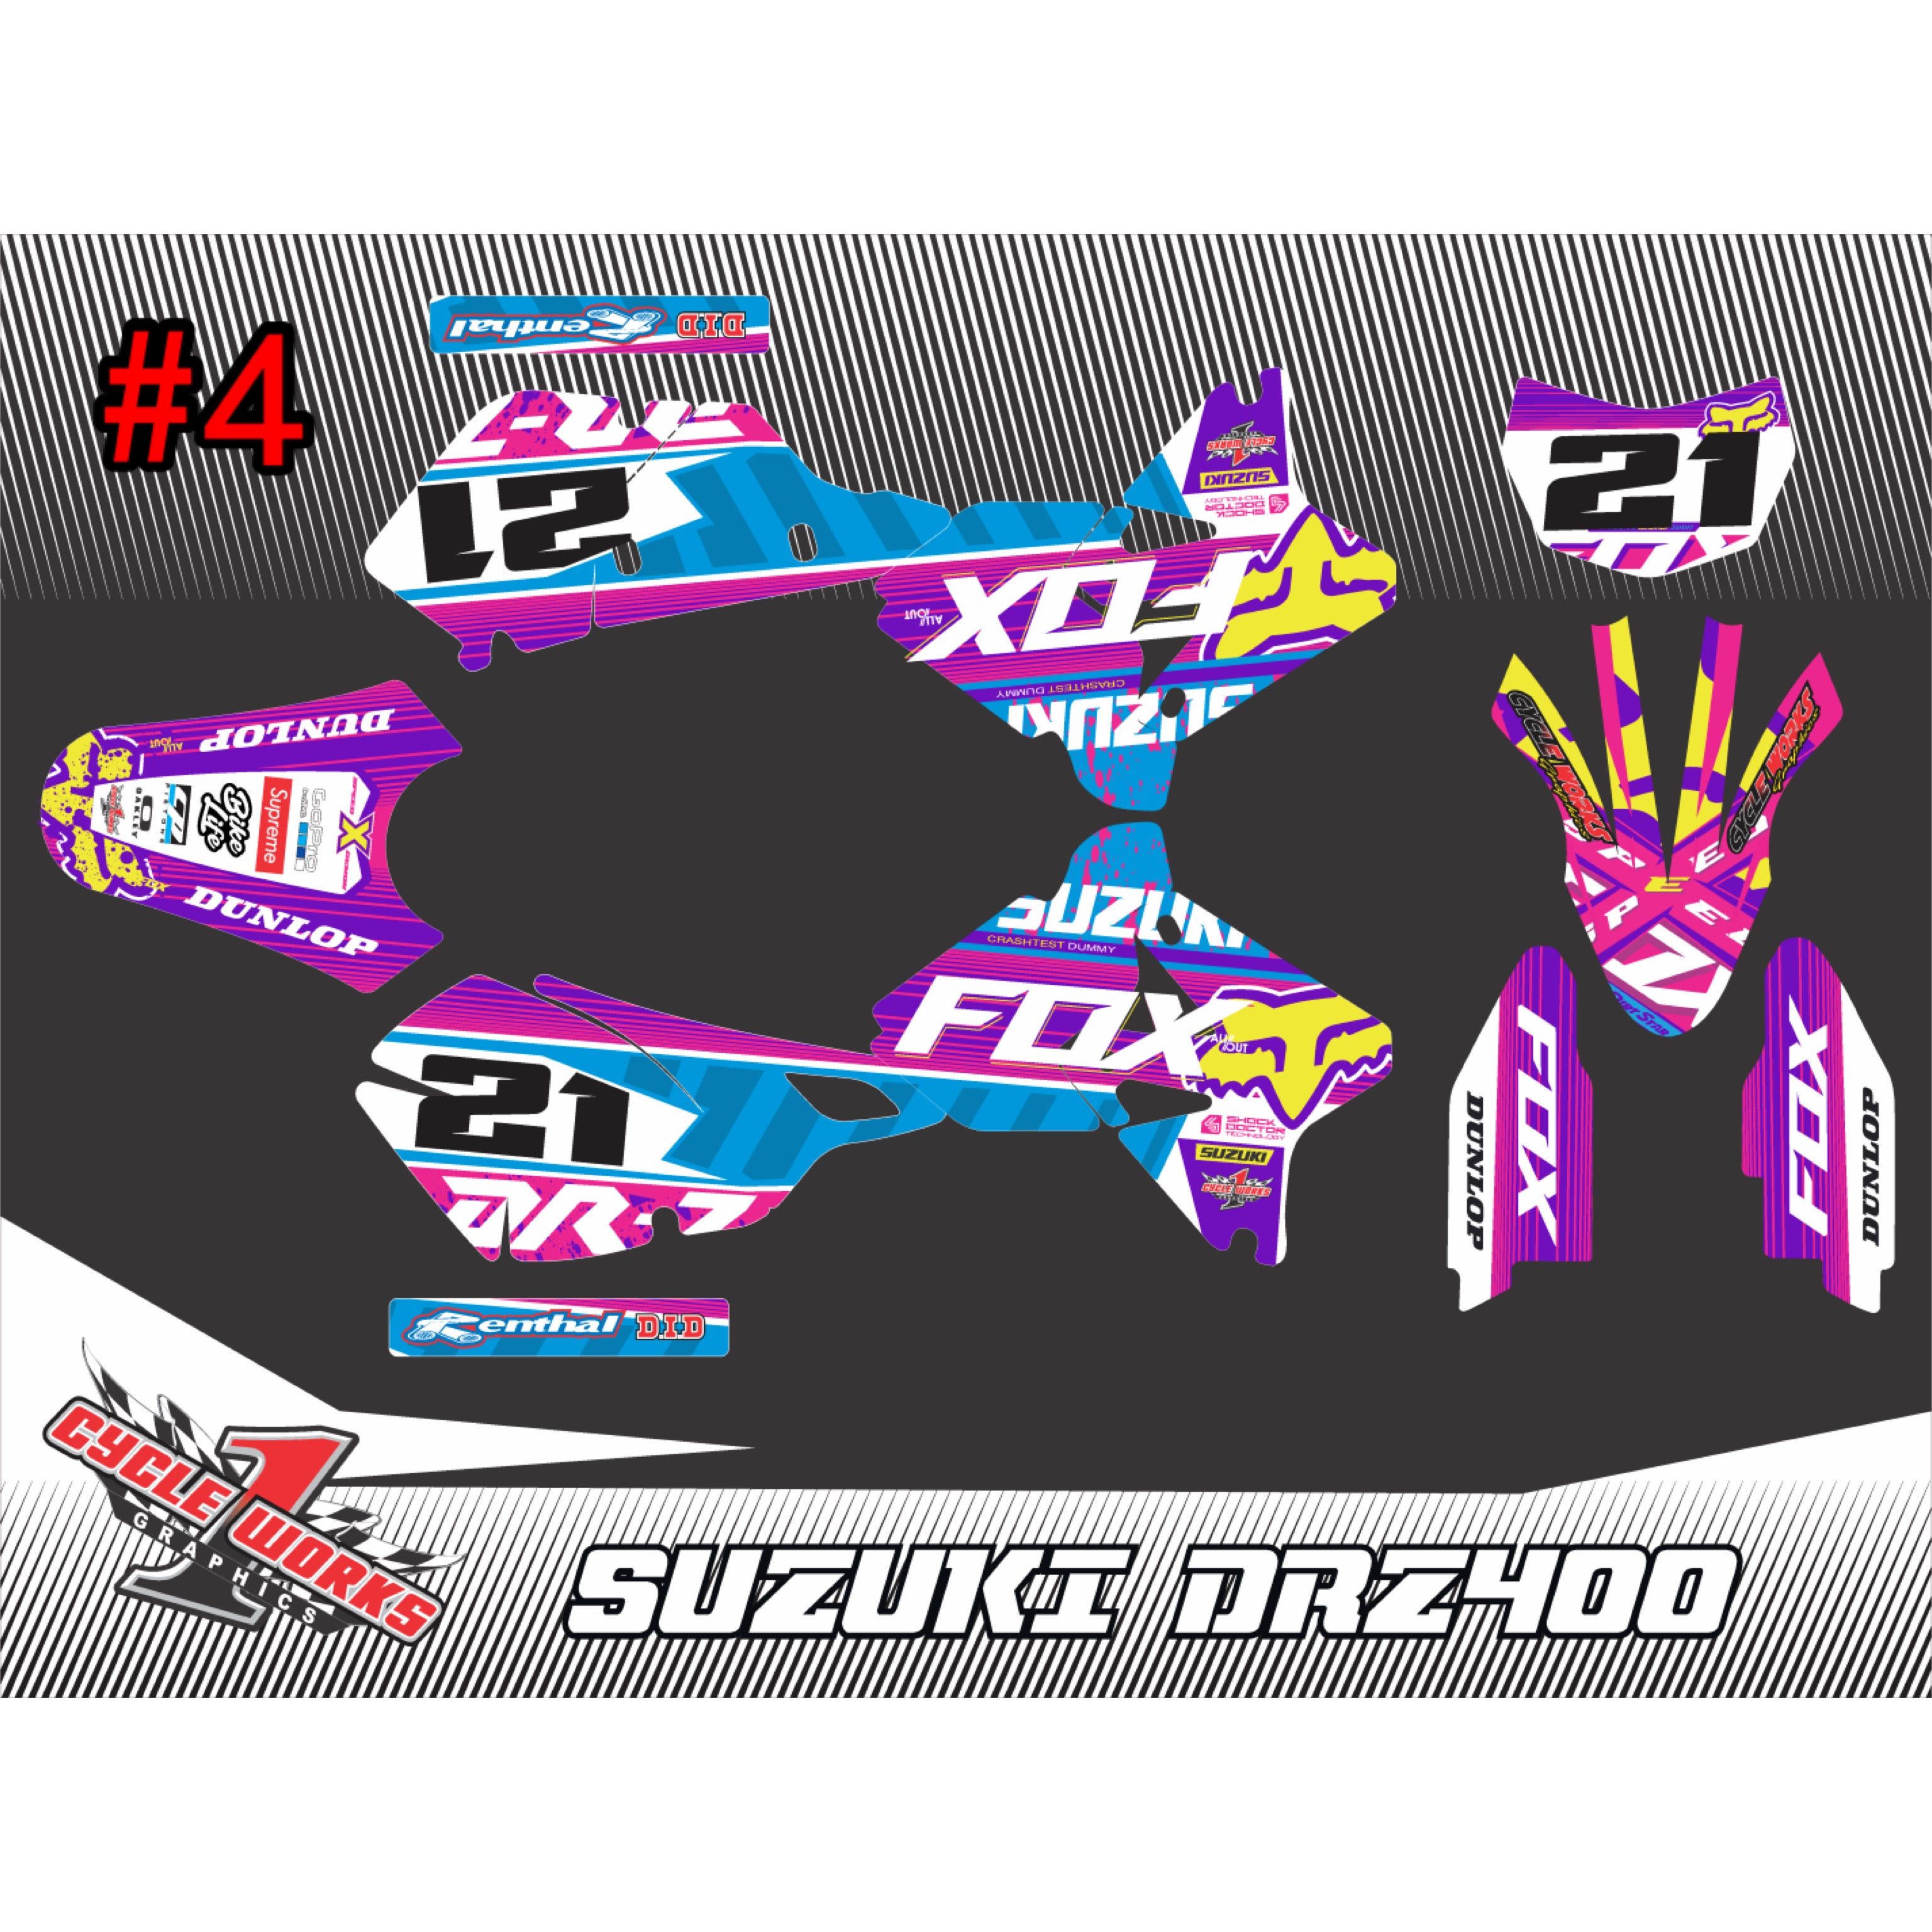 Drz400 full graphic kit fox & yoshimura